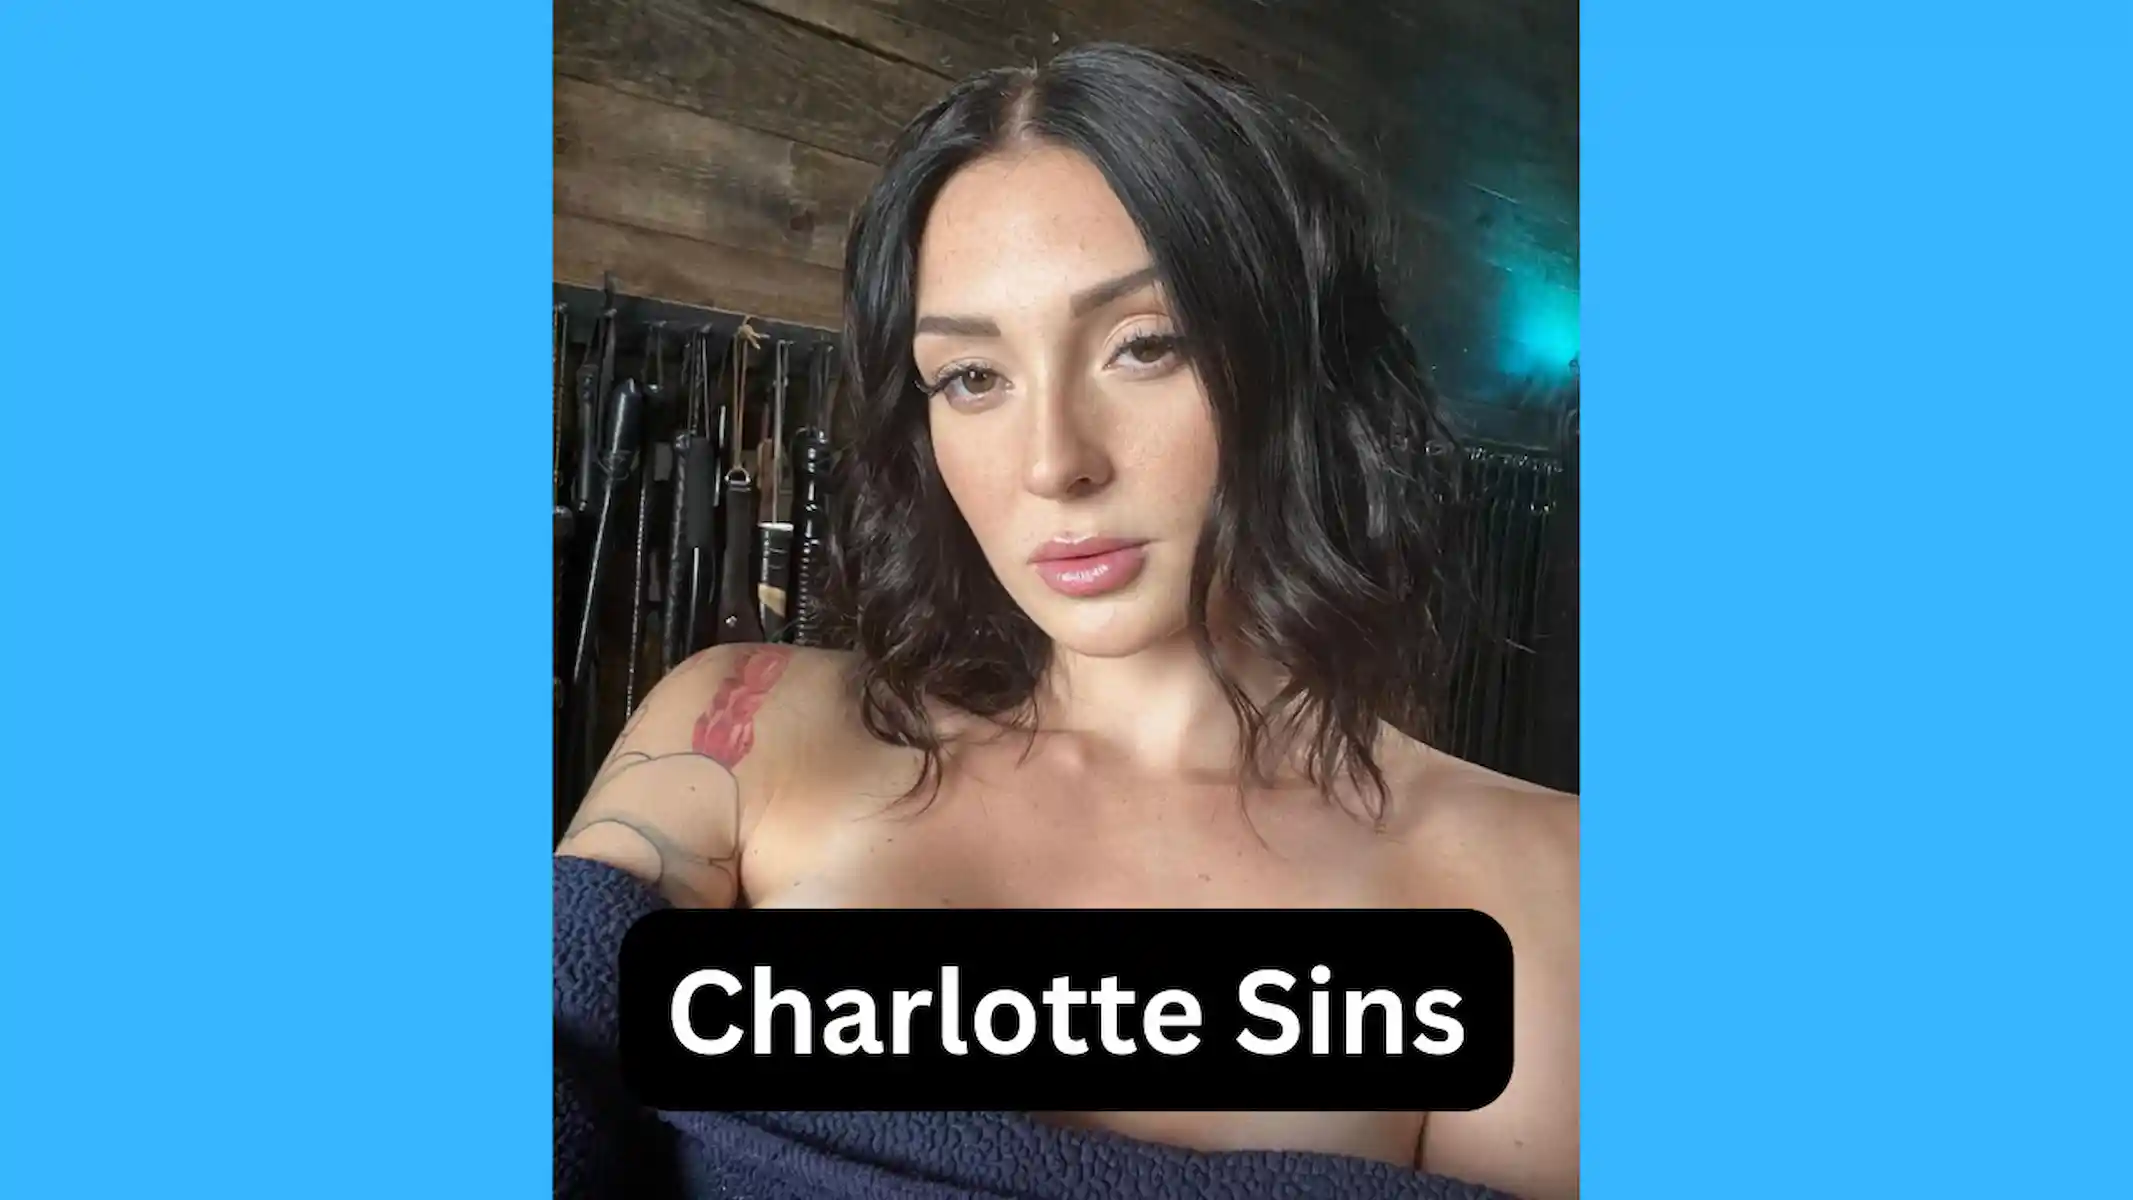 Charlotte Sins